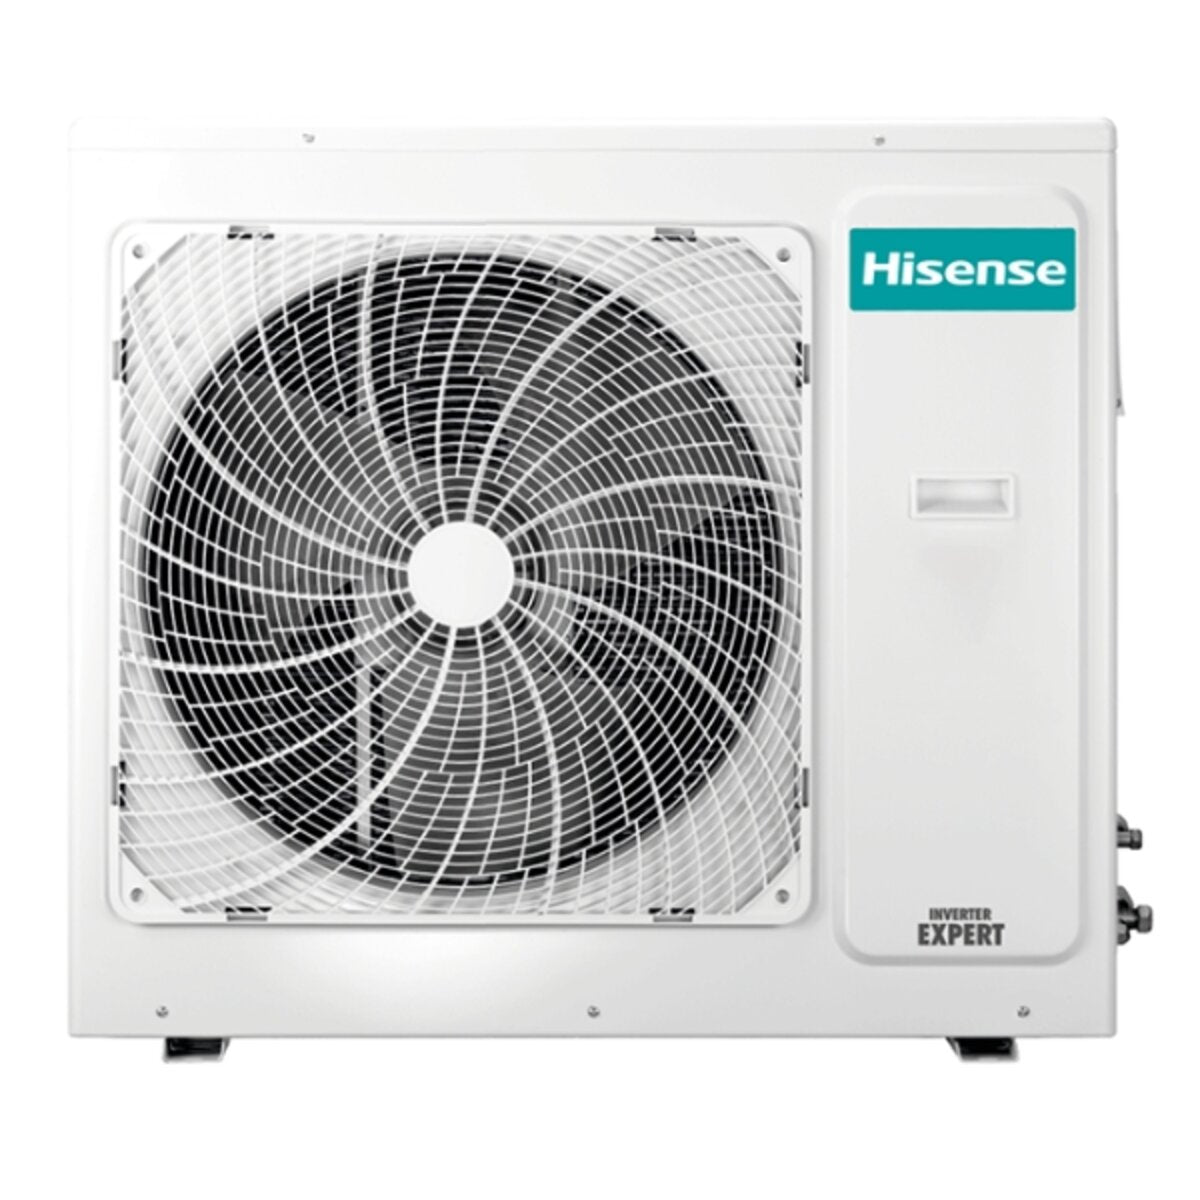 Hisense Hi-Comfort quadri split air conditioner 7000 + 12000 + 12000 + 12000 BTU inverter A++ wifi outdoor unit 10.0 kW